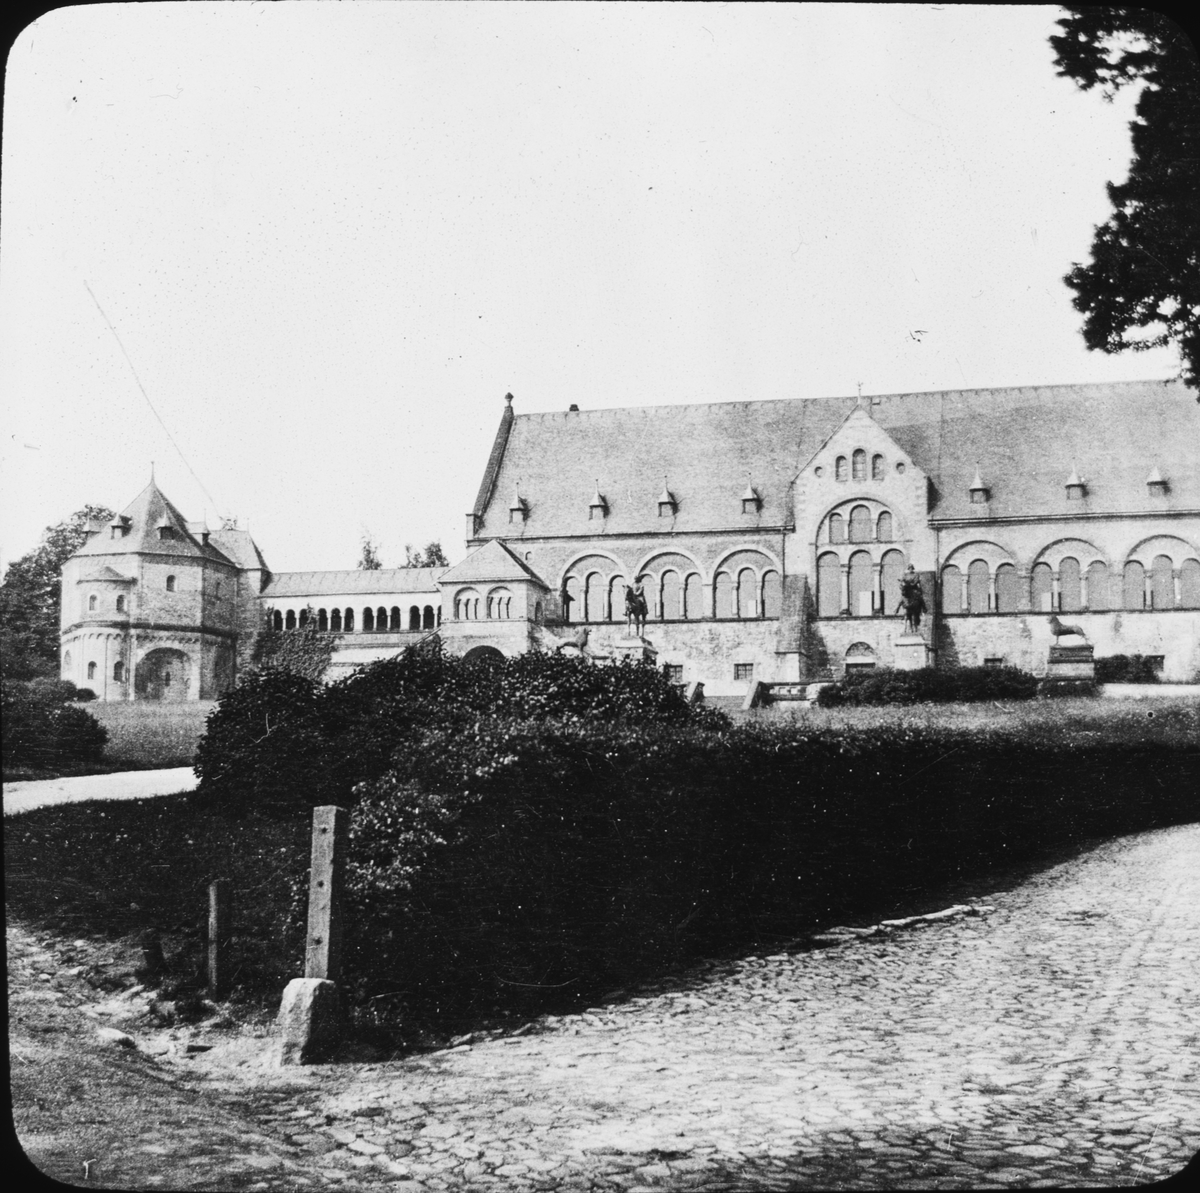 Skioptikonbild med motiv av Kejserliga slottet, Kaiserpfalz Goslar.
Bilden har förvarats i kartong märkt: Resan 1907. Gosslar 7. Text på bild: "Das Kaiserhaus".